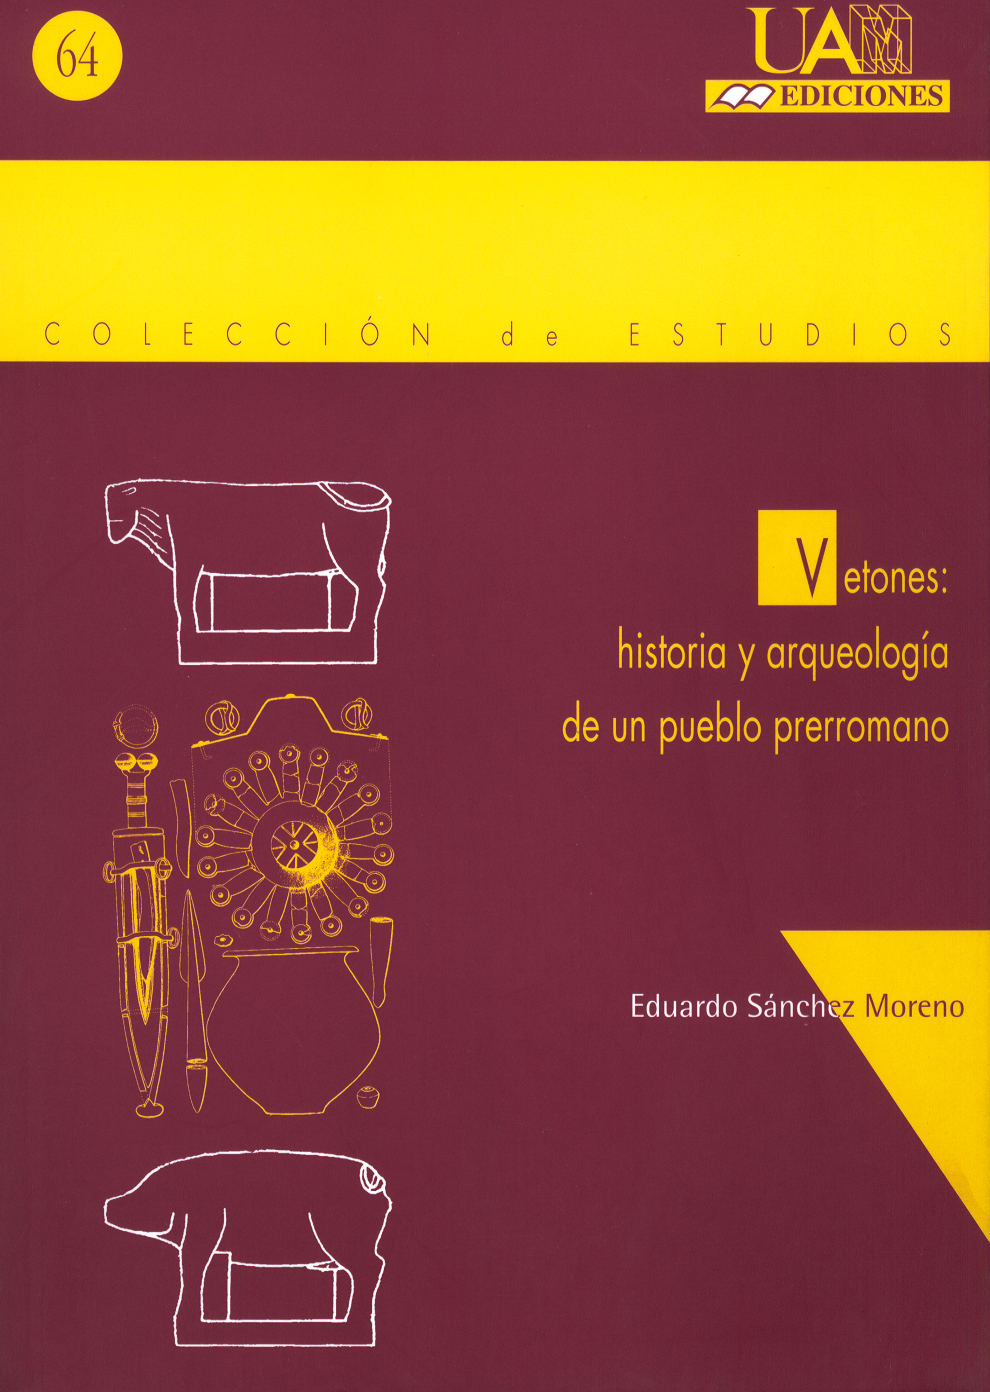 Vetones: Historia y arqueologia de un pueblo prerromano.. 9788474777598